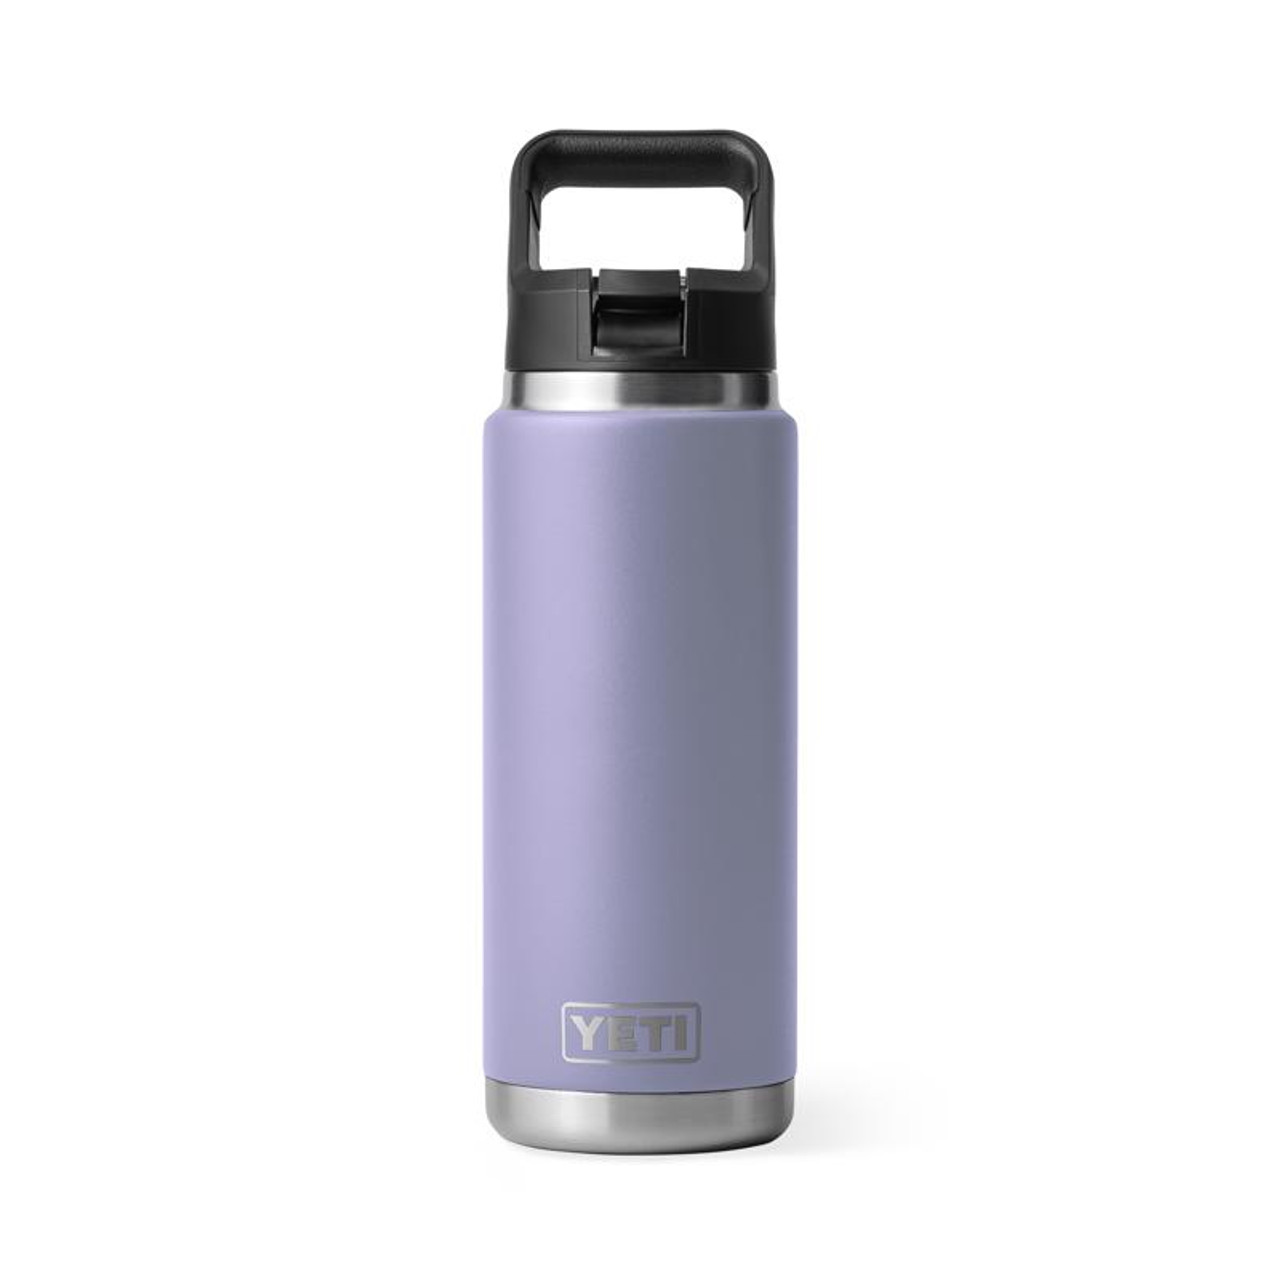 YETI Rambler Black BPA Free Bottle Chug Cap 